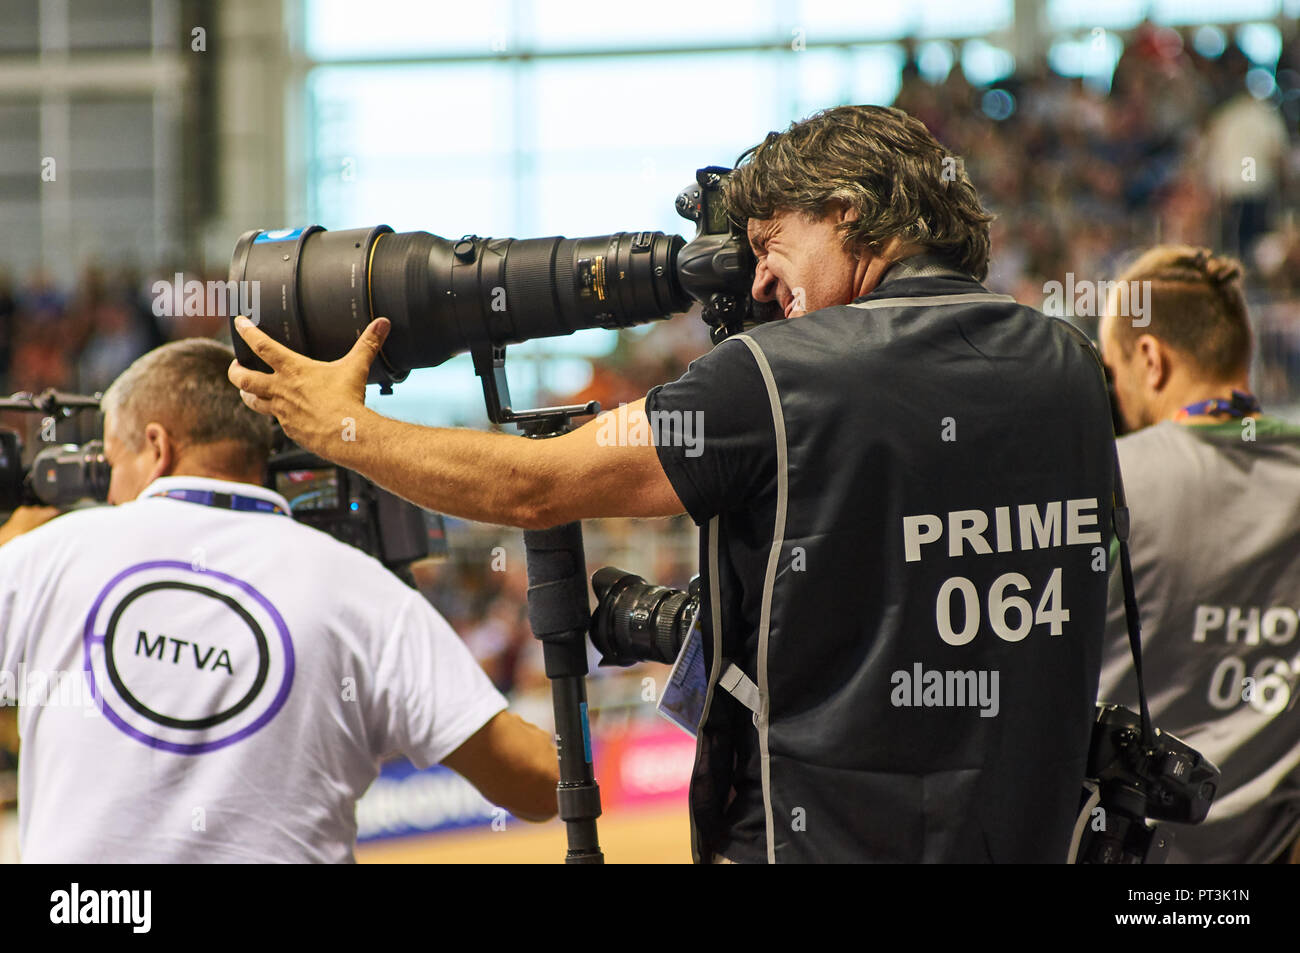 Fotógrafo de prensa fotografiar la carrera utilizando un teleobjetivo Nikon durante el Campeonato Europeo en Glasgow en 2018. Foto de stock